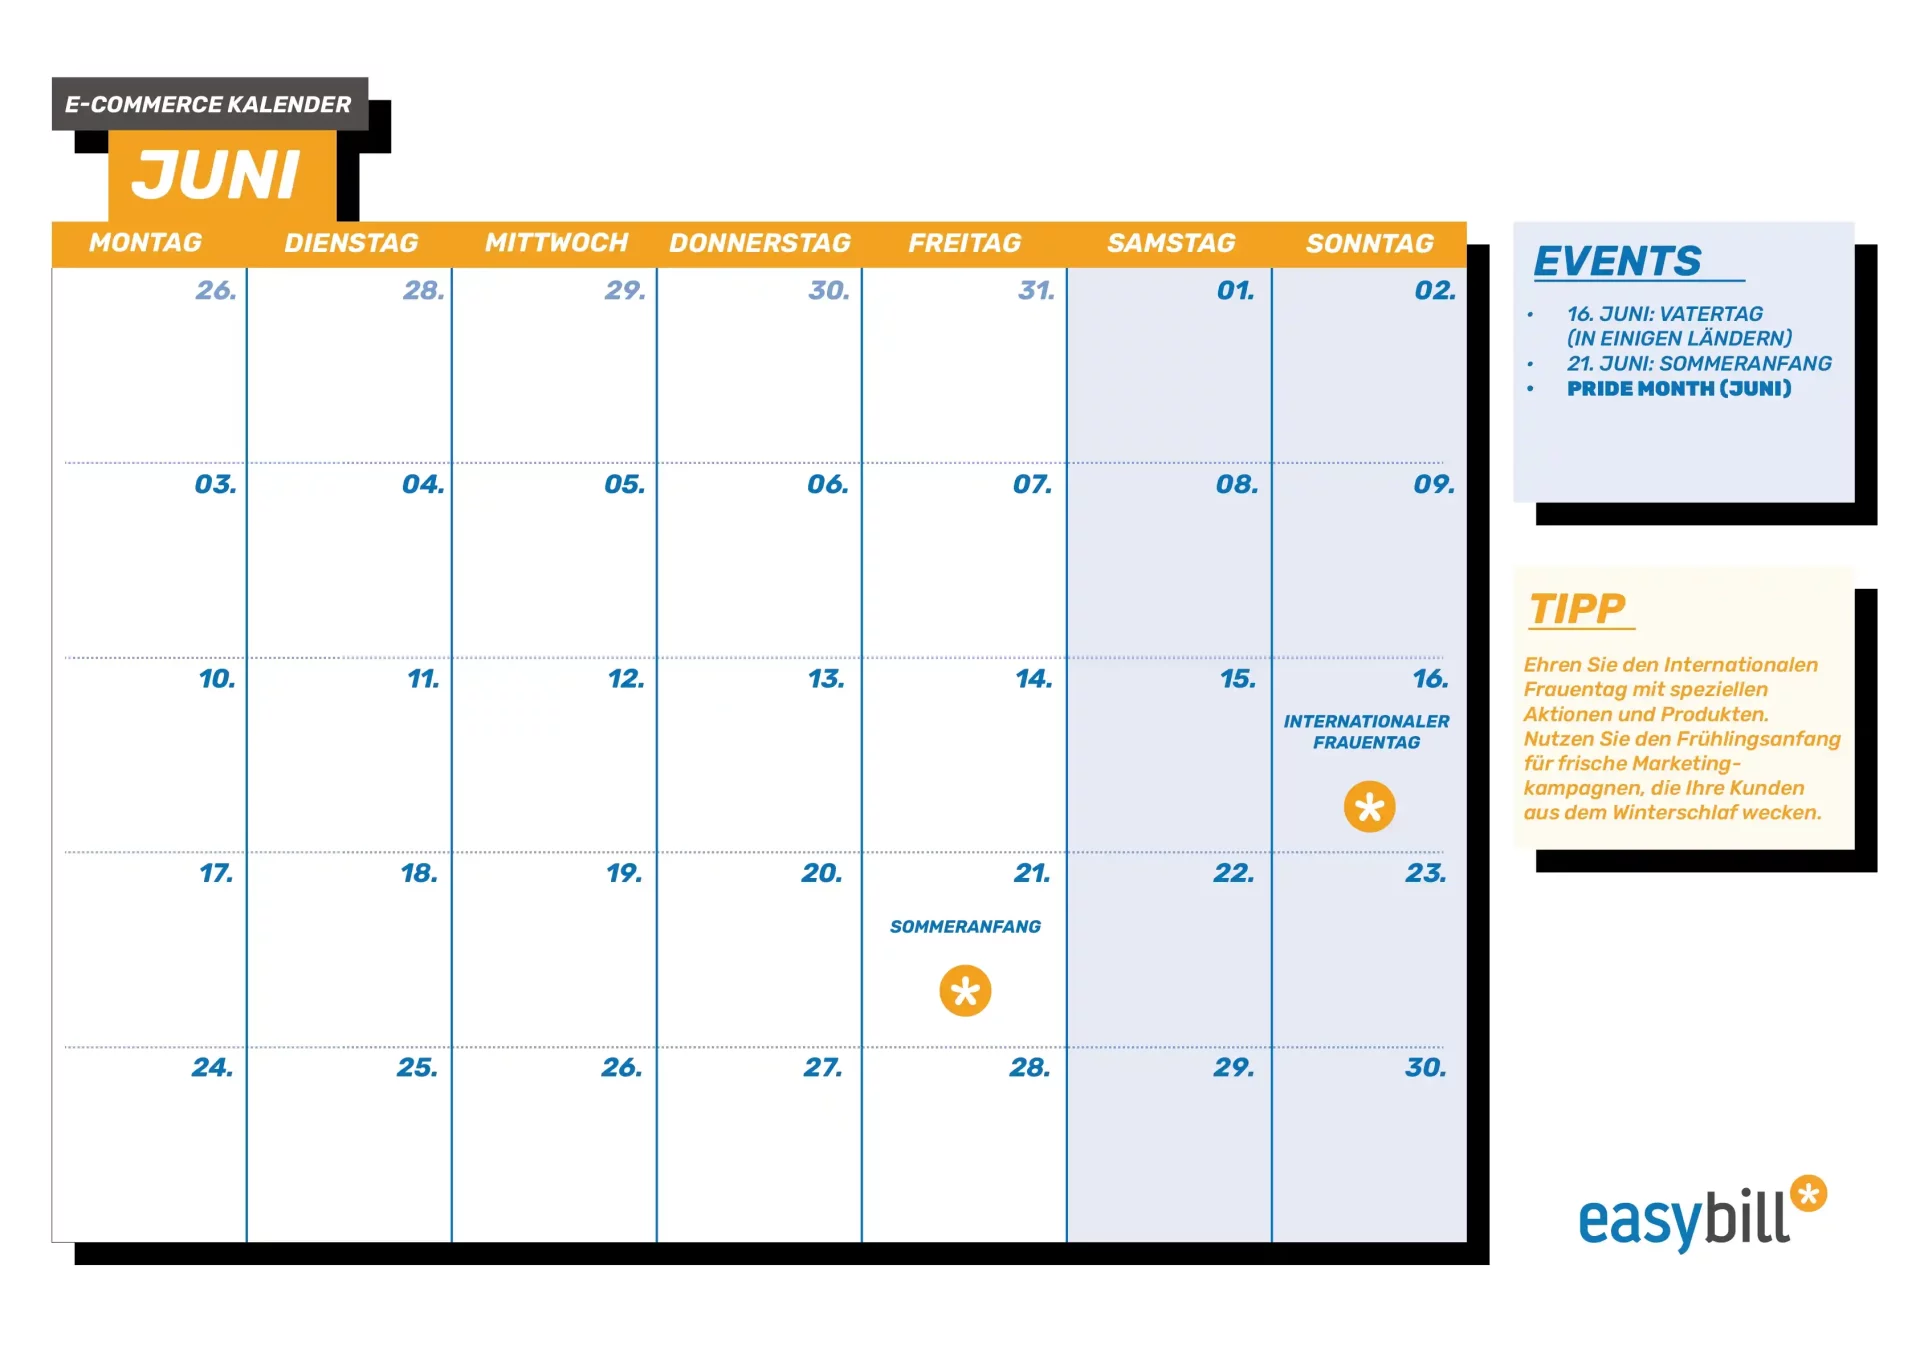 Mai-E-Commerce Kalender, mit besonderem Blick auf den Muttertag und das Erwachen der Natur.